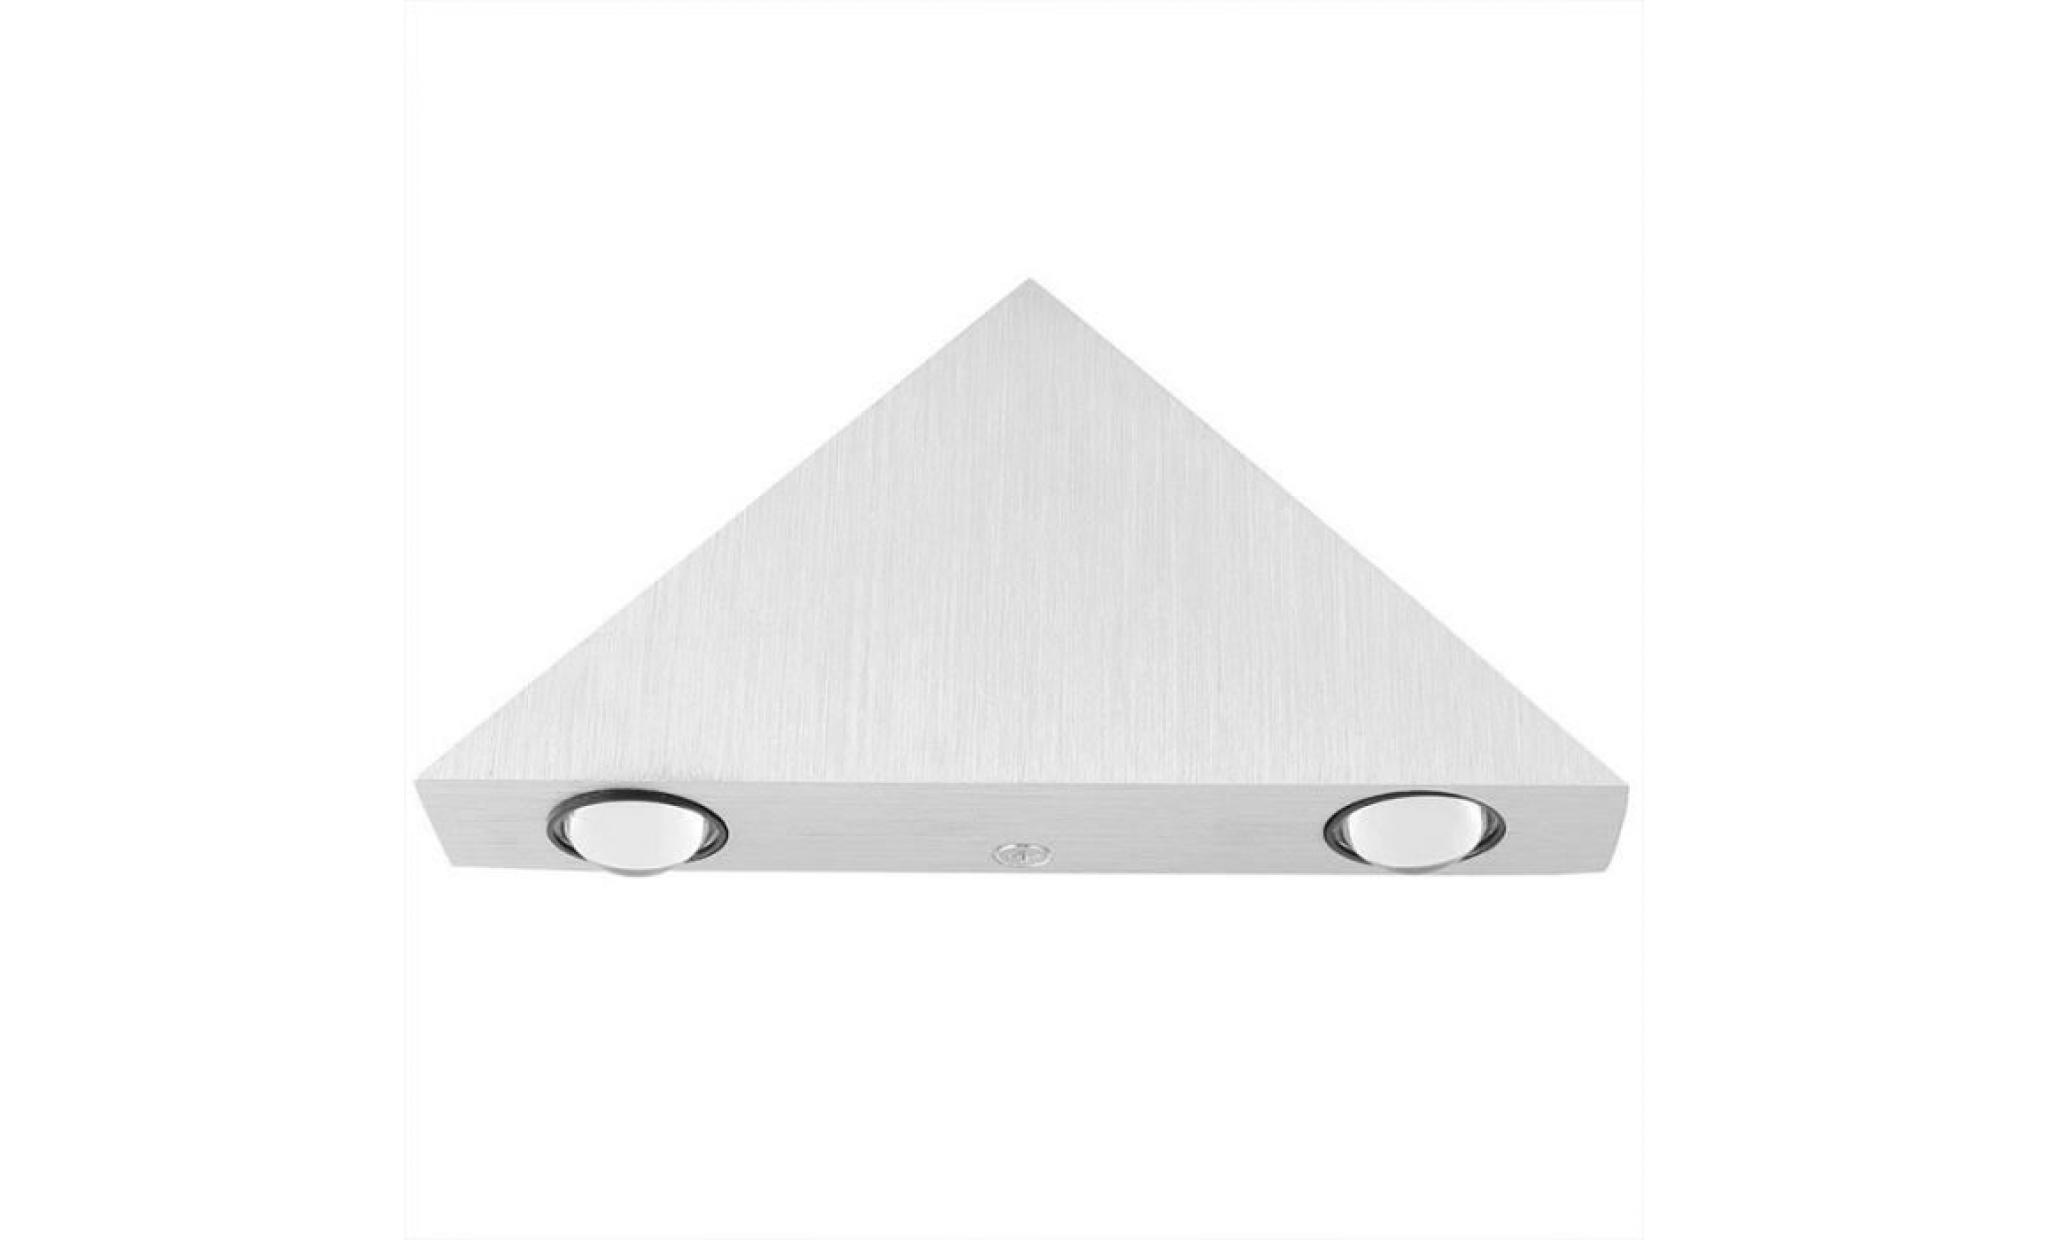 interieur 3w en triangle en aluminium pour lampe de mur eclairage décoratif à économie de couloir salon chambre ?(blanc froid) pas cher